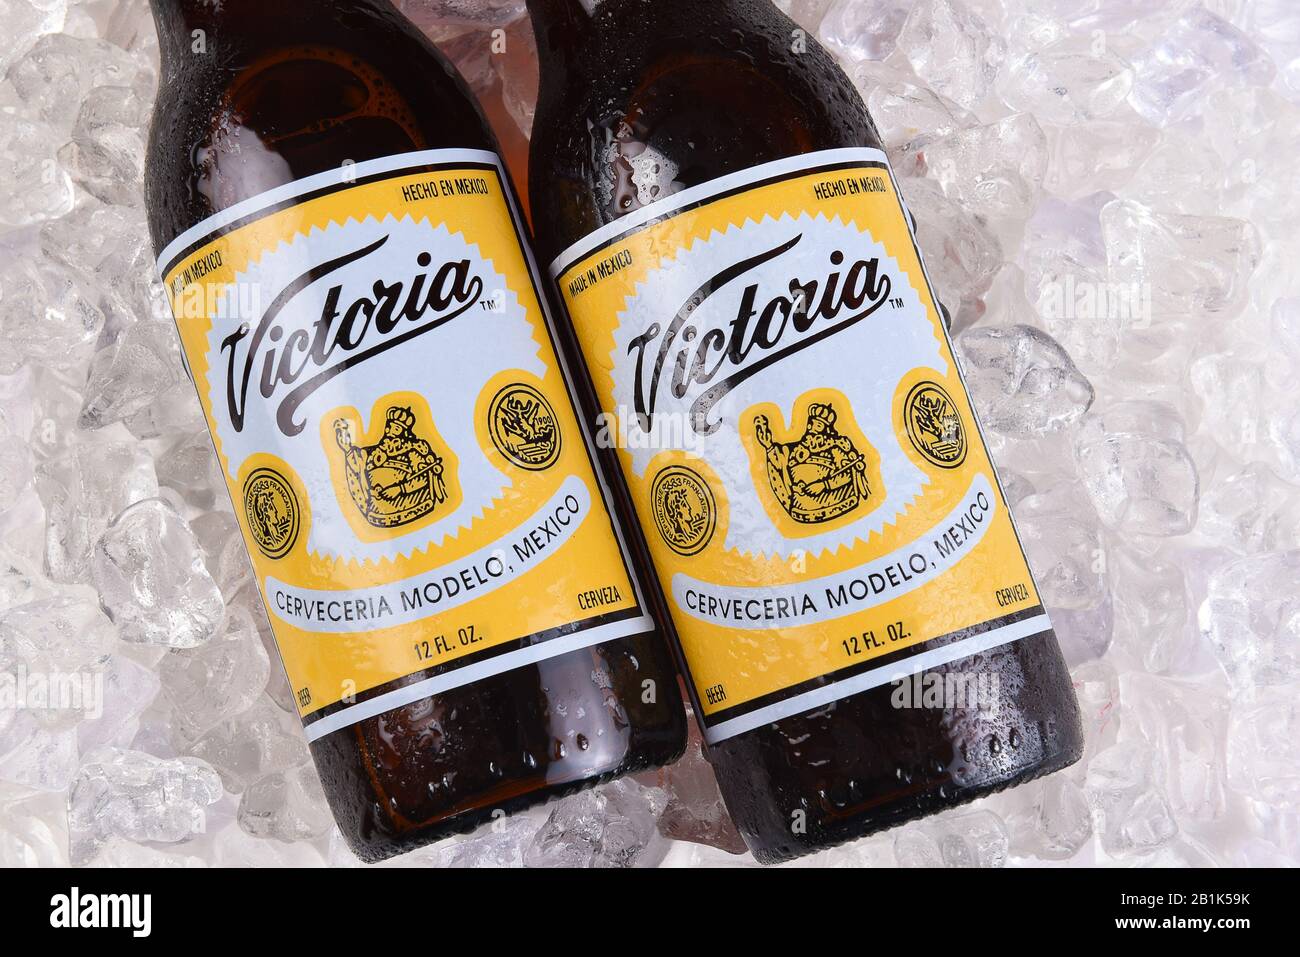 Irvine, KALIFORNIEN - 21. MÄRZ 2018: Zwei Victoria-Bierflaschen auf Eis. Mexicos älteste Biermarke. Victoria wurde konsequent als Wiener ST gebraut Stockfoto